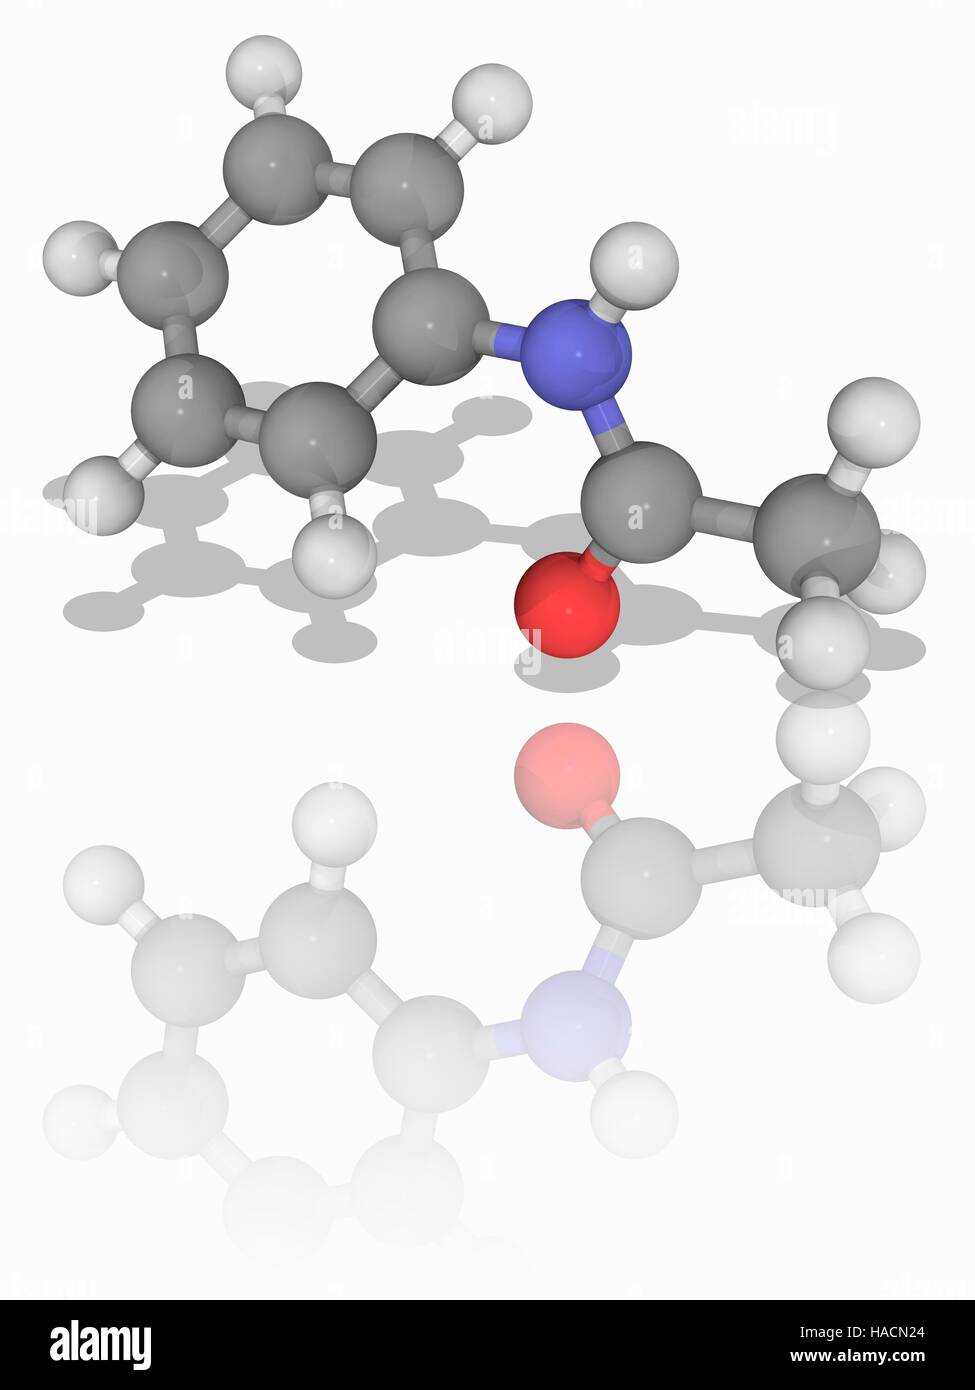 Acetanilid. Molekülmodell Acetanilid (C8. H9. Navi), auch benannt N-Phenylacetamide. Diese Chemikalie wurde einst als Analgetikum verwendet und dient heute als chemischen Stabilisator. Atome als Kugeln dargestellt werden und sind farblich gekennzeichnet: Kohlenstoff (grau), Wasserstoff (weiß), Stickstoff (blau) und Sauerstoff (rot). Abbildung. Stockfoto